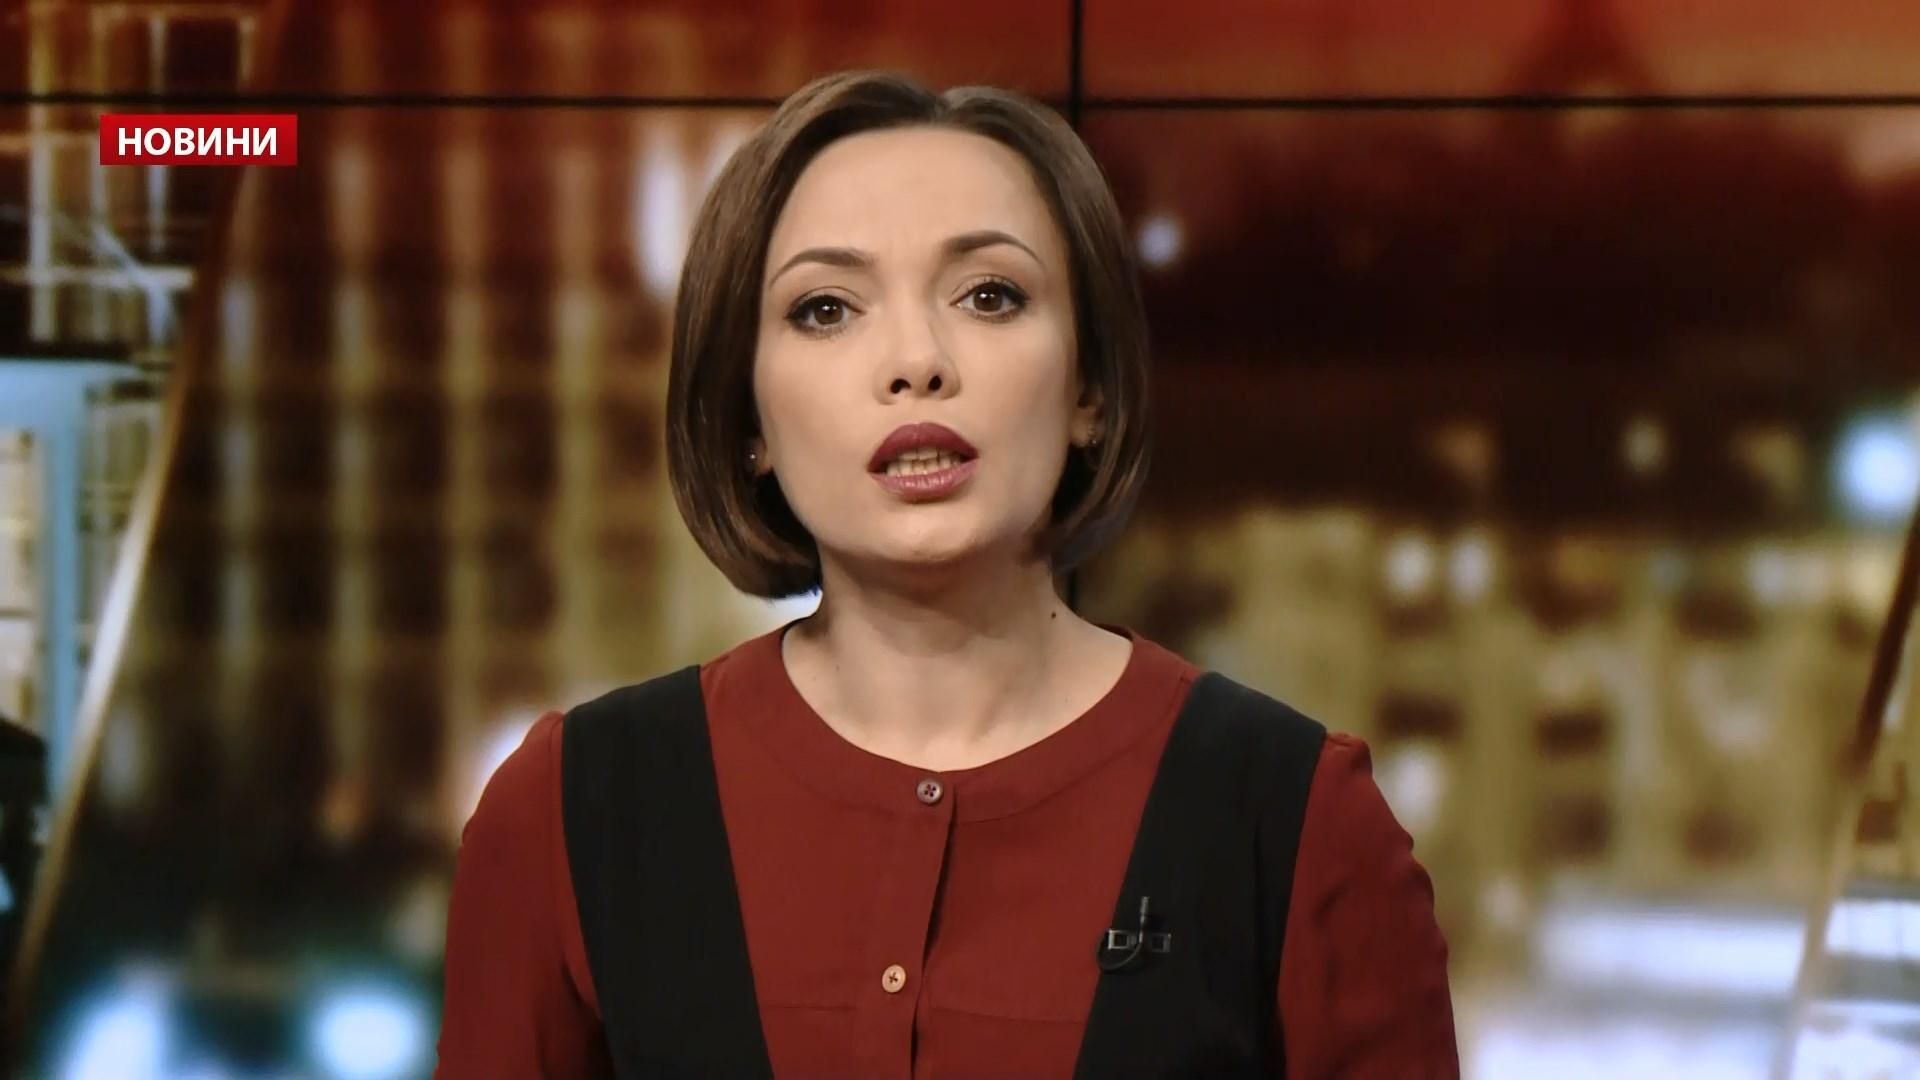 Випуск новин за 20:00: Ножовий напад на російську журналістку. Обшук мера Одеси

